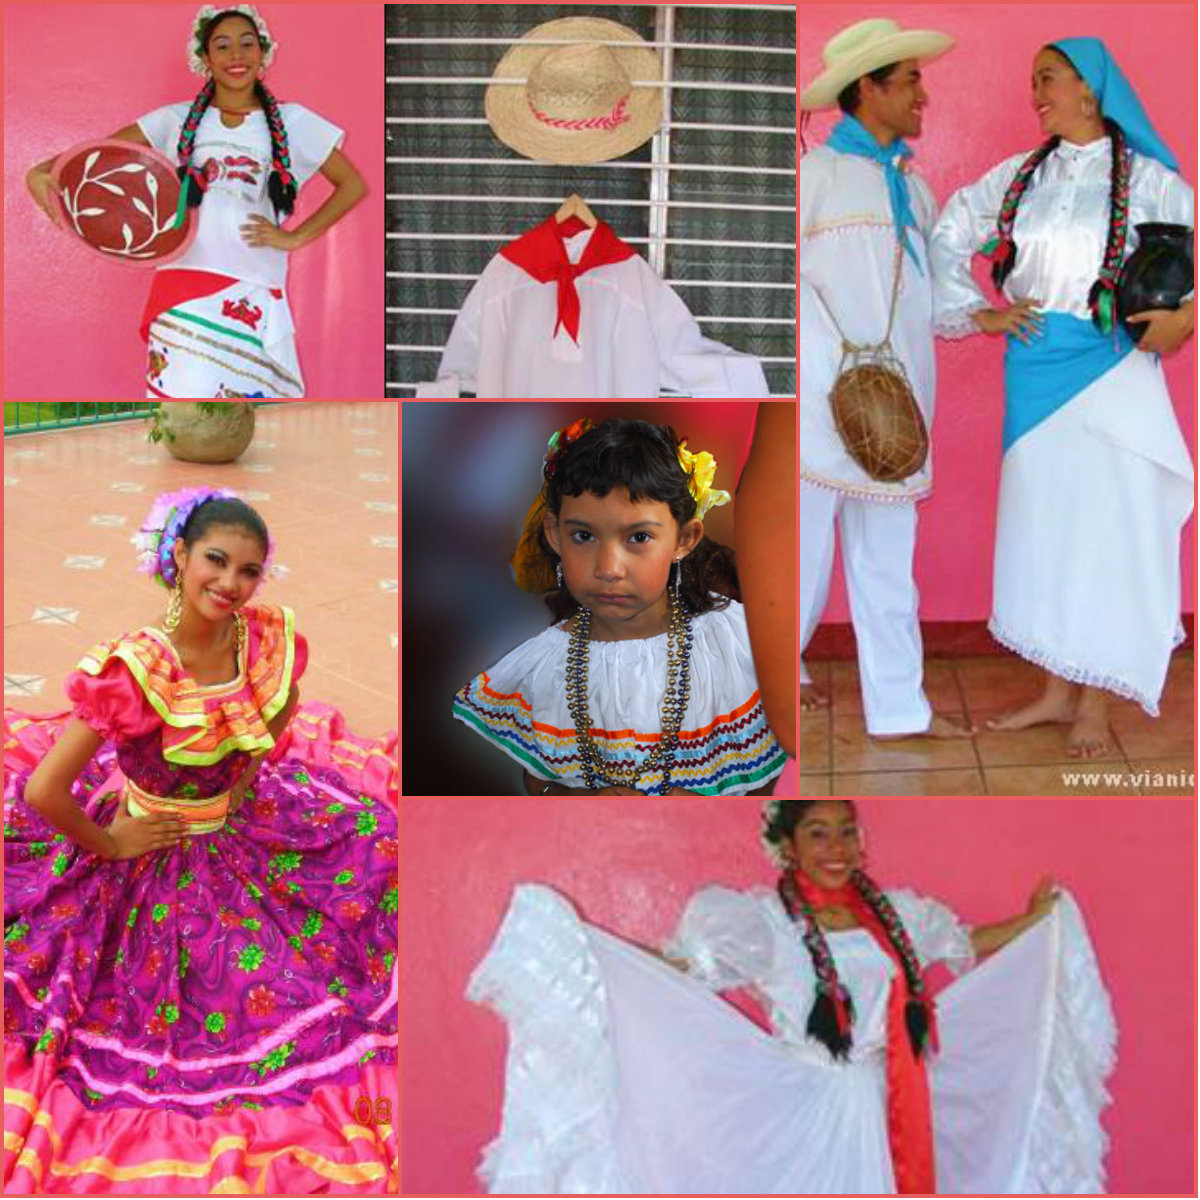 La diversidad de Culturas ♥: Vestuario de Nicaragua.